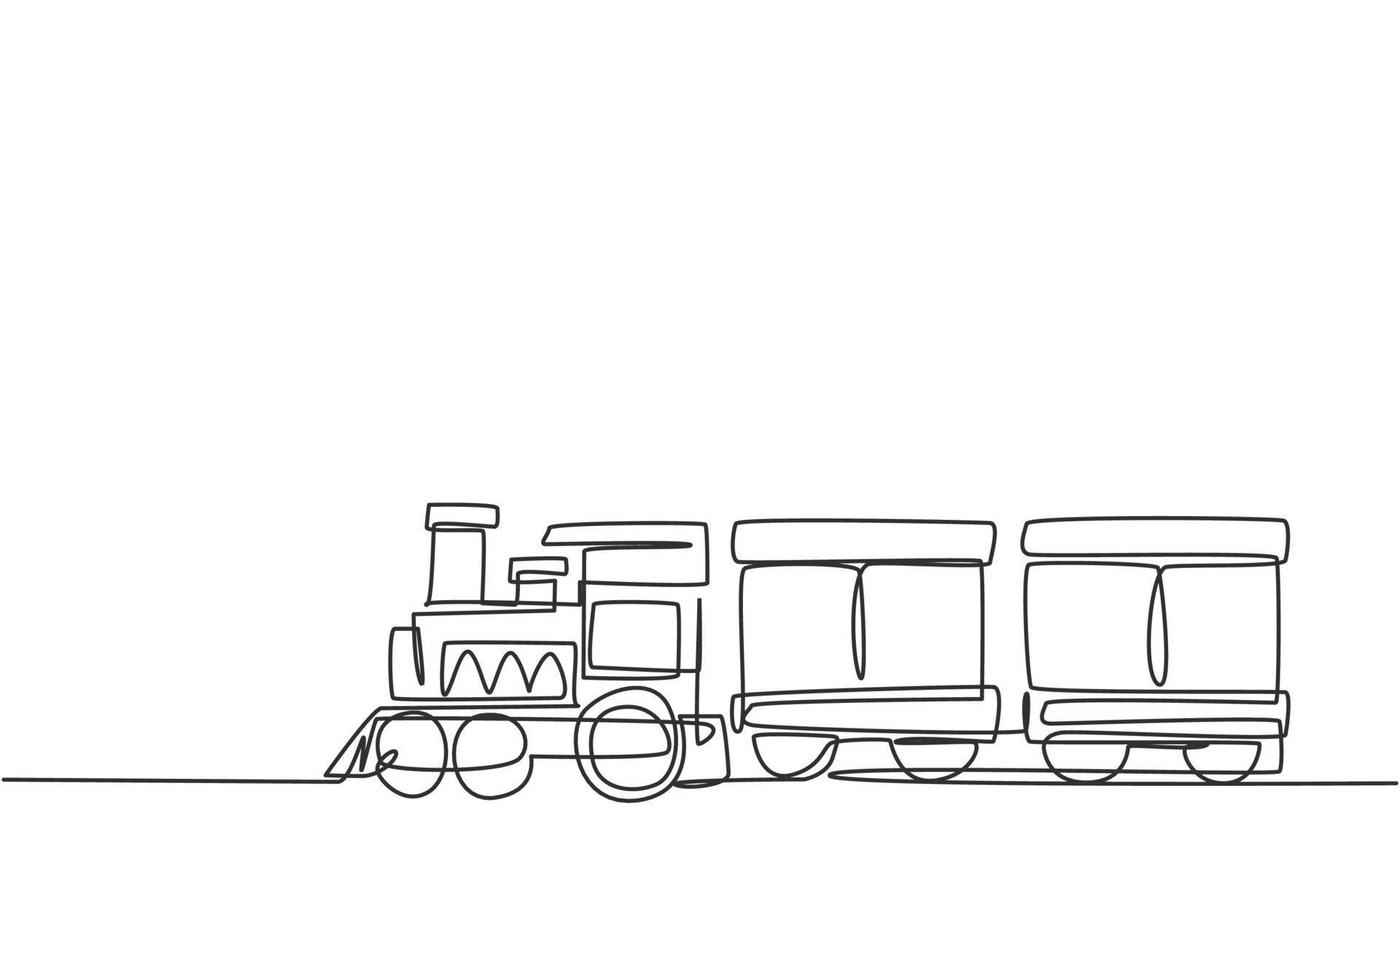 enkele lijntekening van een treinlocomotief met twee rijtuigen in de vorm van een zwervend stoomsysteem in een pretpark om passagiers te vervoeren. doorlopende lijn tekenen ontwerp grafische vectorillustratie vector